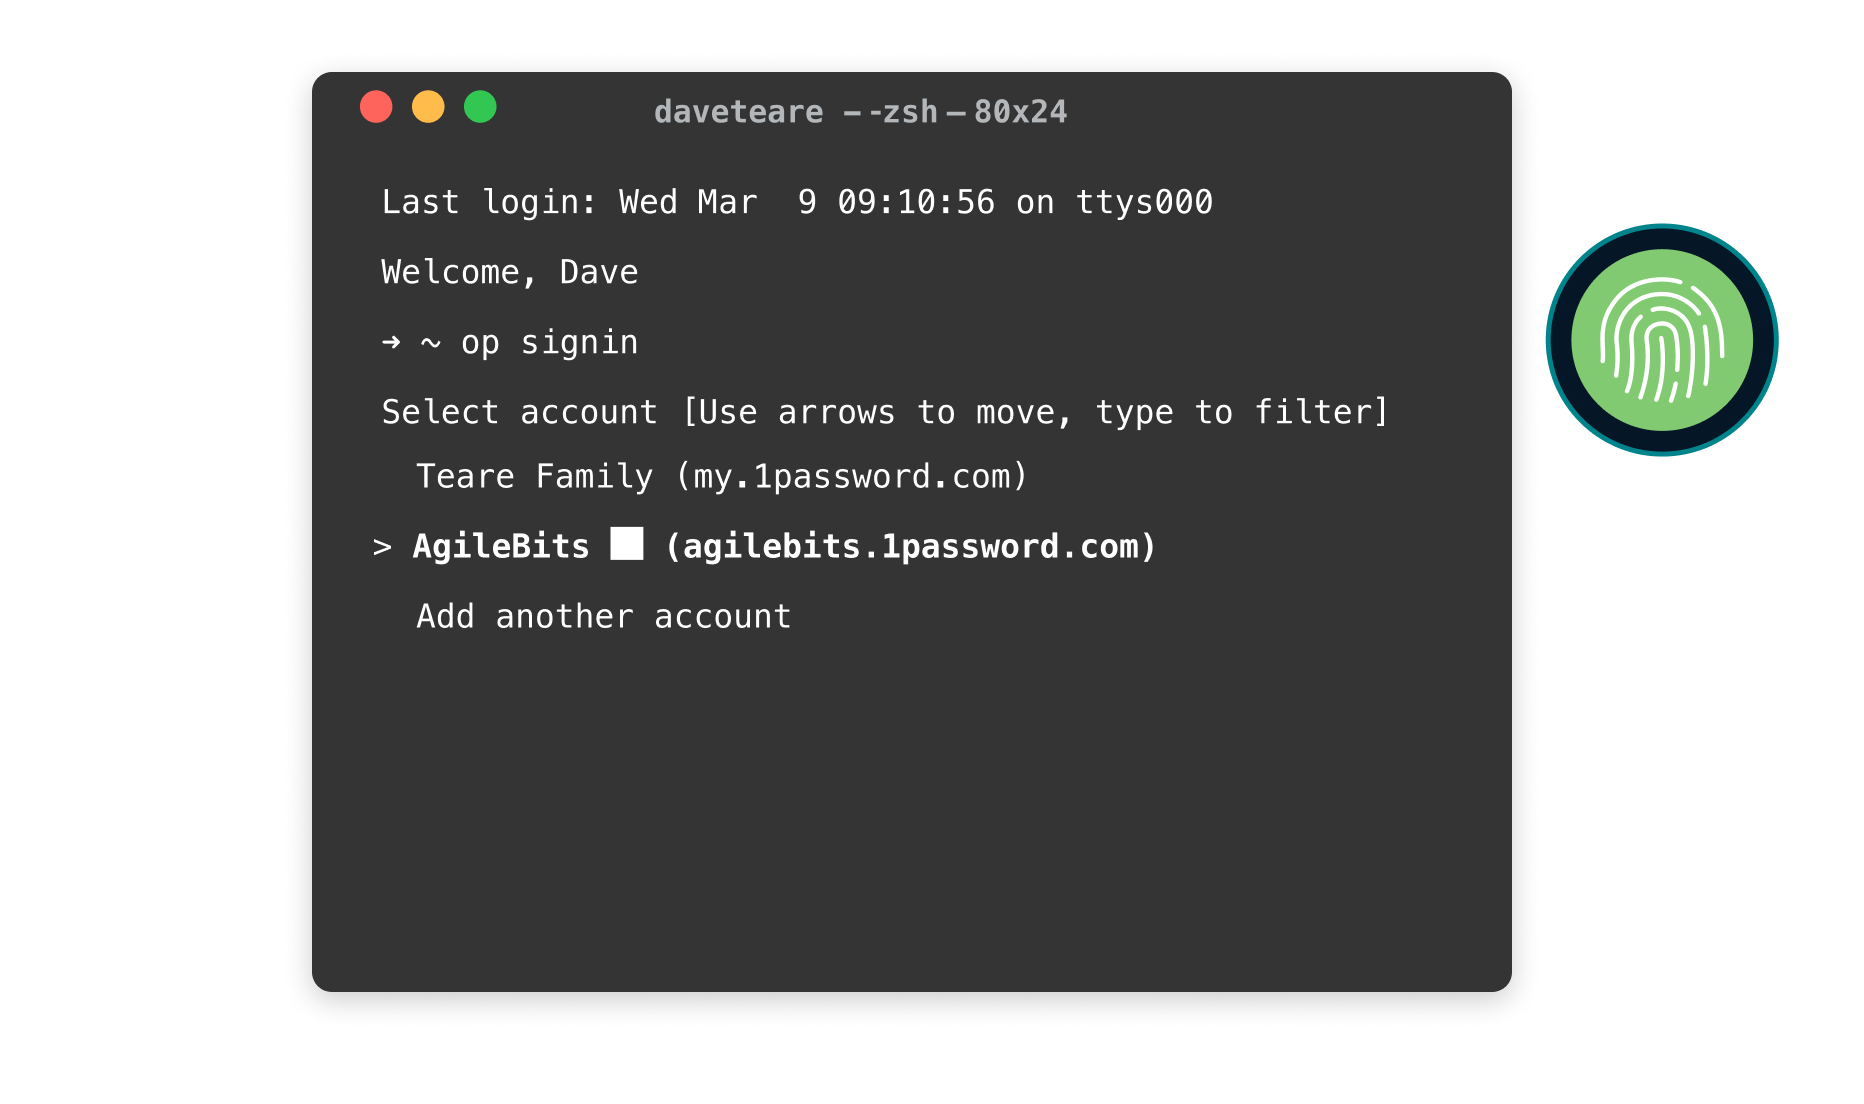 青背景にMacのターミナルウィンドウの上半分。 ターミナルにコードが表示され、ログインの詳細と1Password CLIのウェルカムメッセージが表示されています。 ターミナルウィンドウのすぐ外側に緑色のTouch IDのイラストがあり、白い線で結ばれ、Touch IDで1Password CLIにログインできることを示しています。